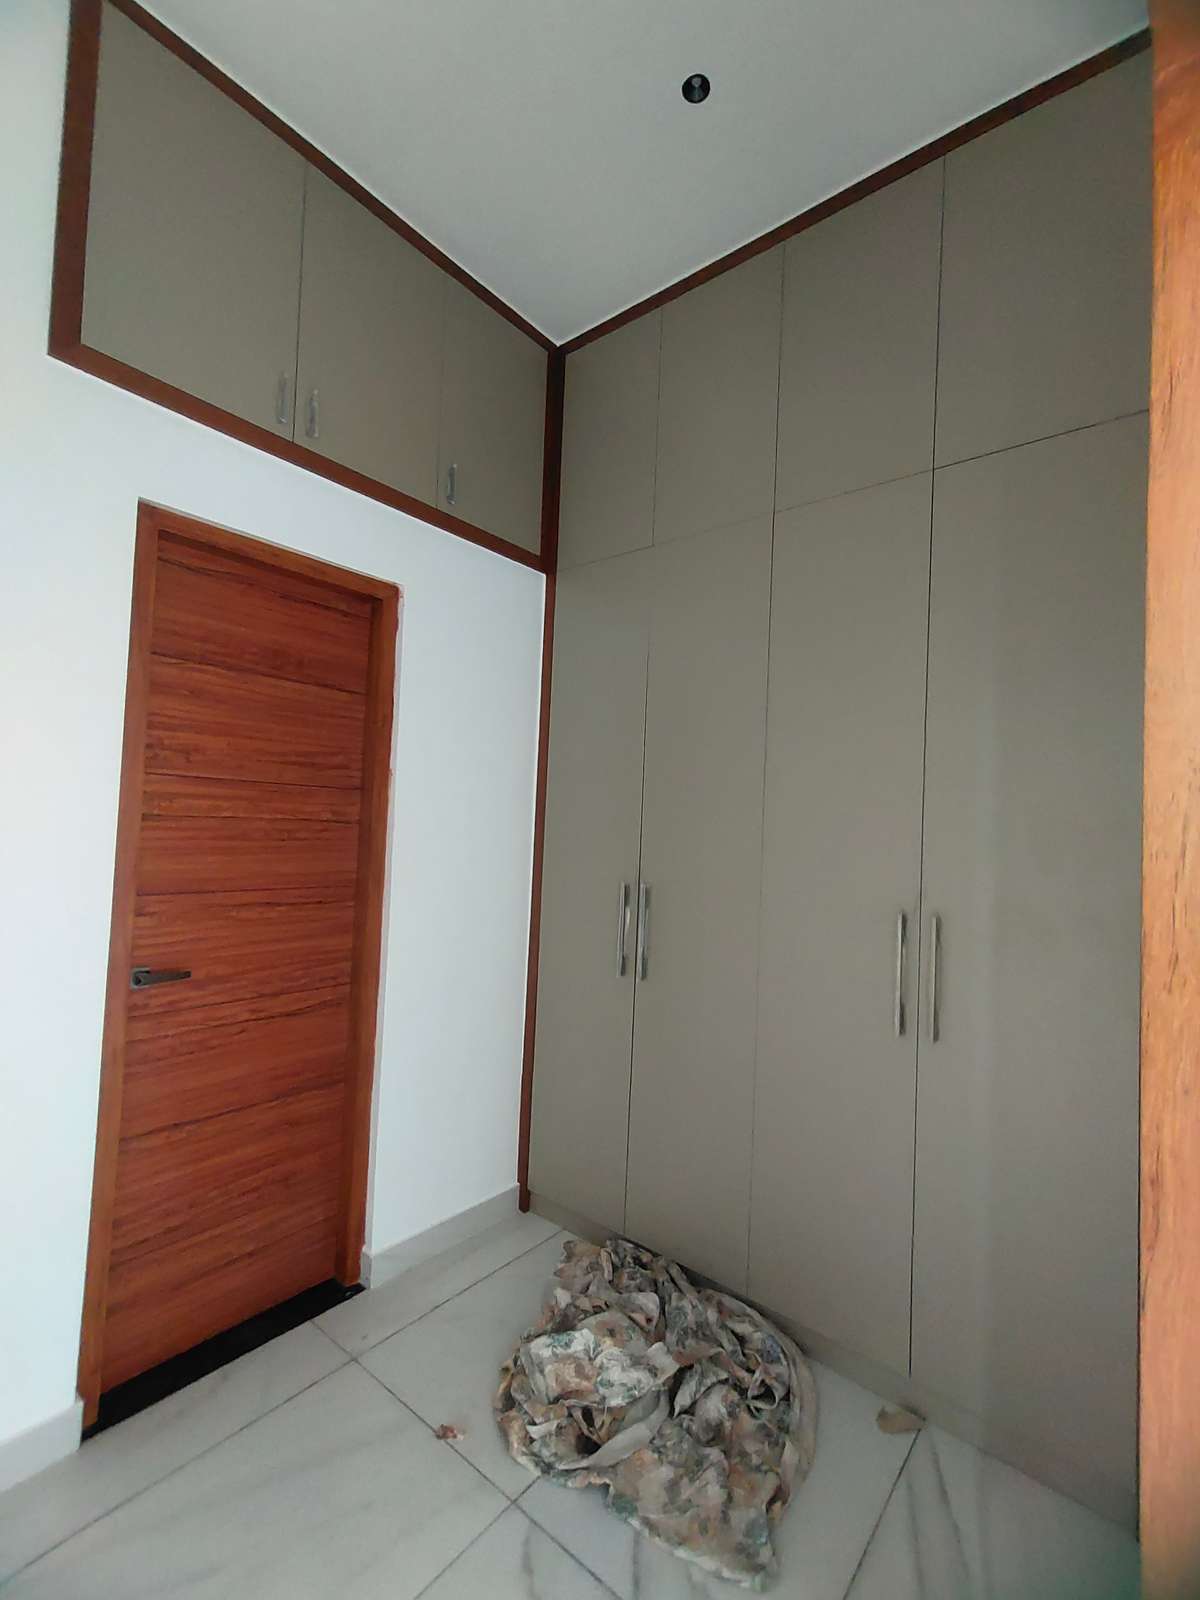 Furniture, Storage, Bedroom, Window, Door Designs by Interior Designer Hilook interior Design, Palakkad | Kolo